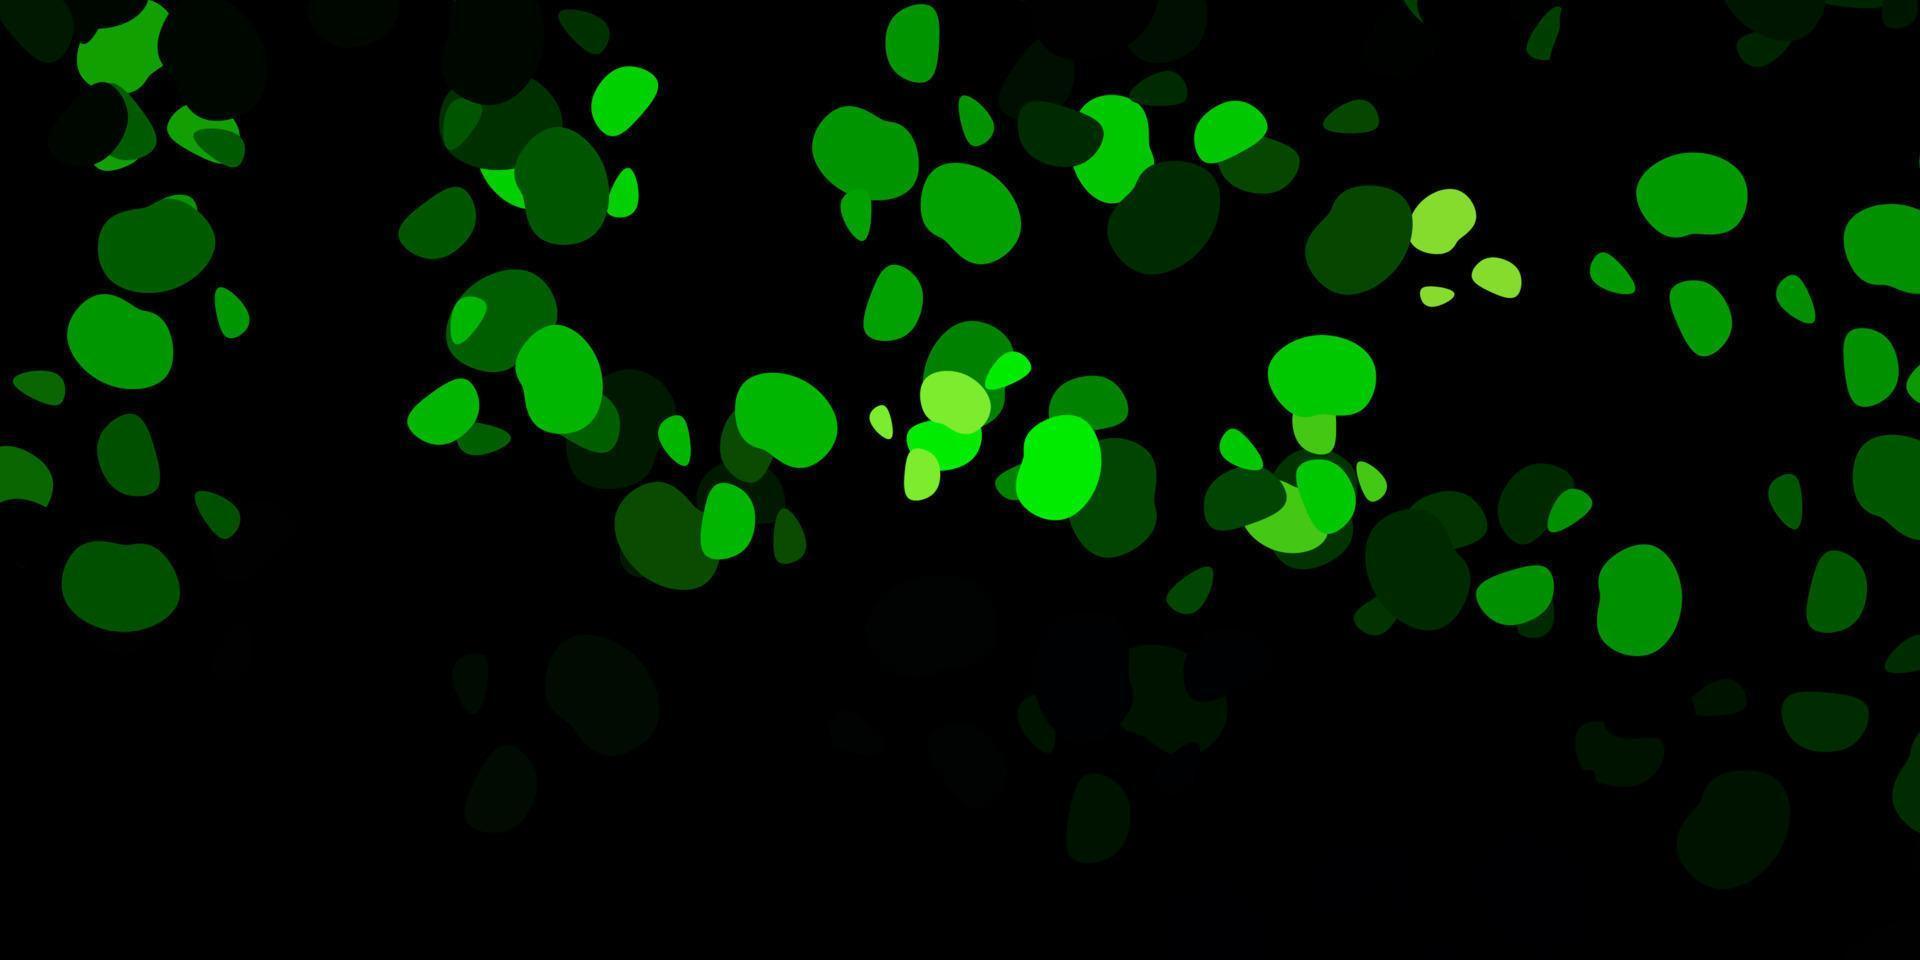 padrão de vetor verde escuro com formas abstratas.